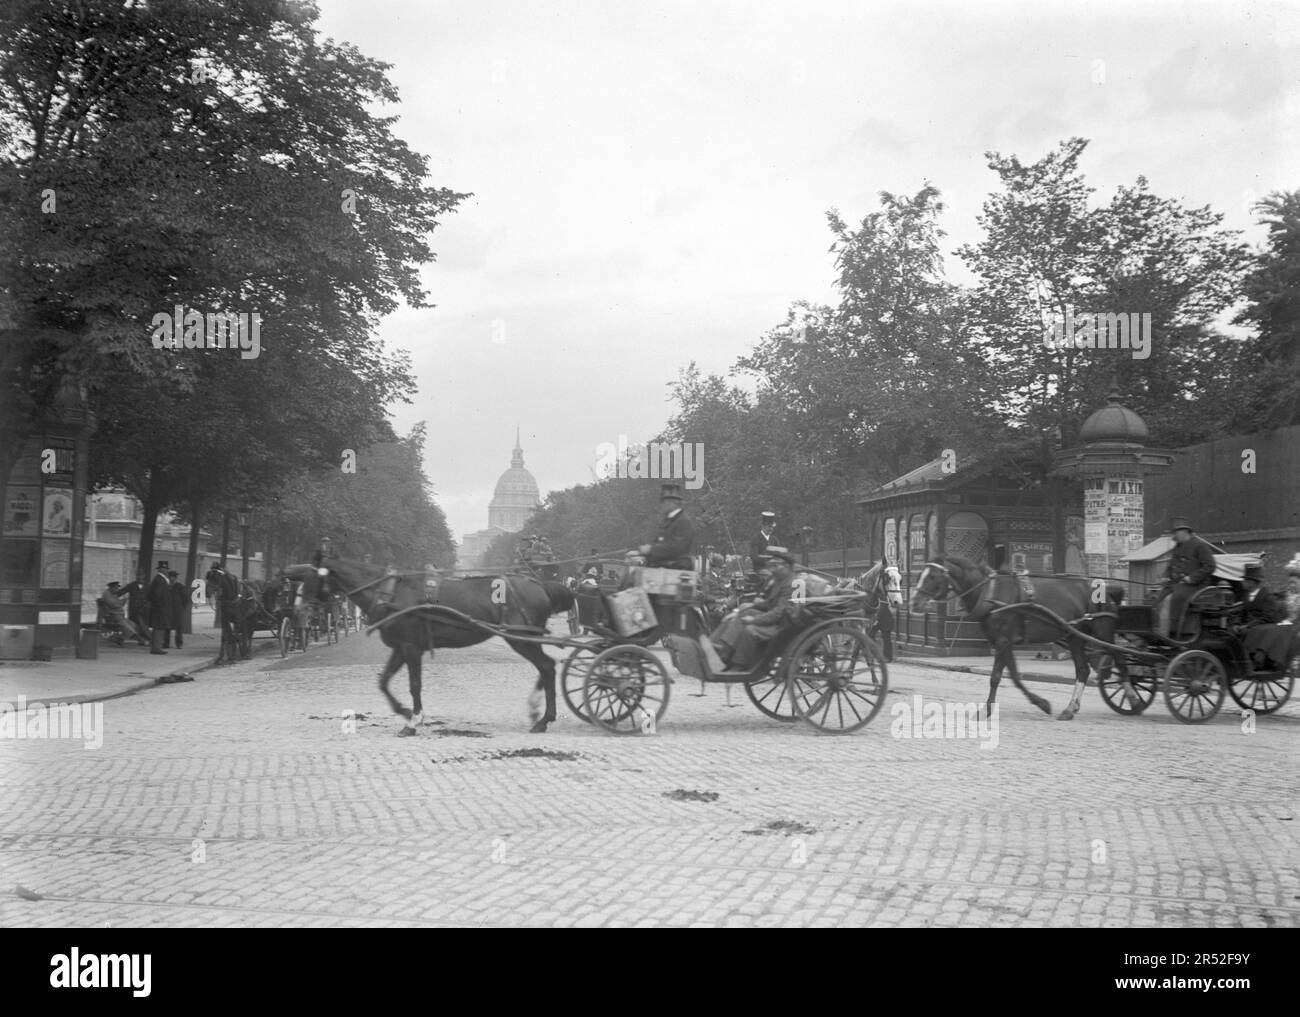 Una carrozza trainata da cavalli attraversa una strada a Parigi. C'è Les Invalides in background. Inizio del 20th ° secolo. Vecchia fotografia digitalizzata. Foto Stock